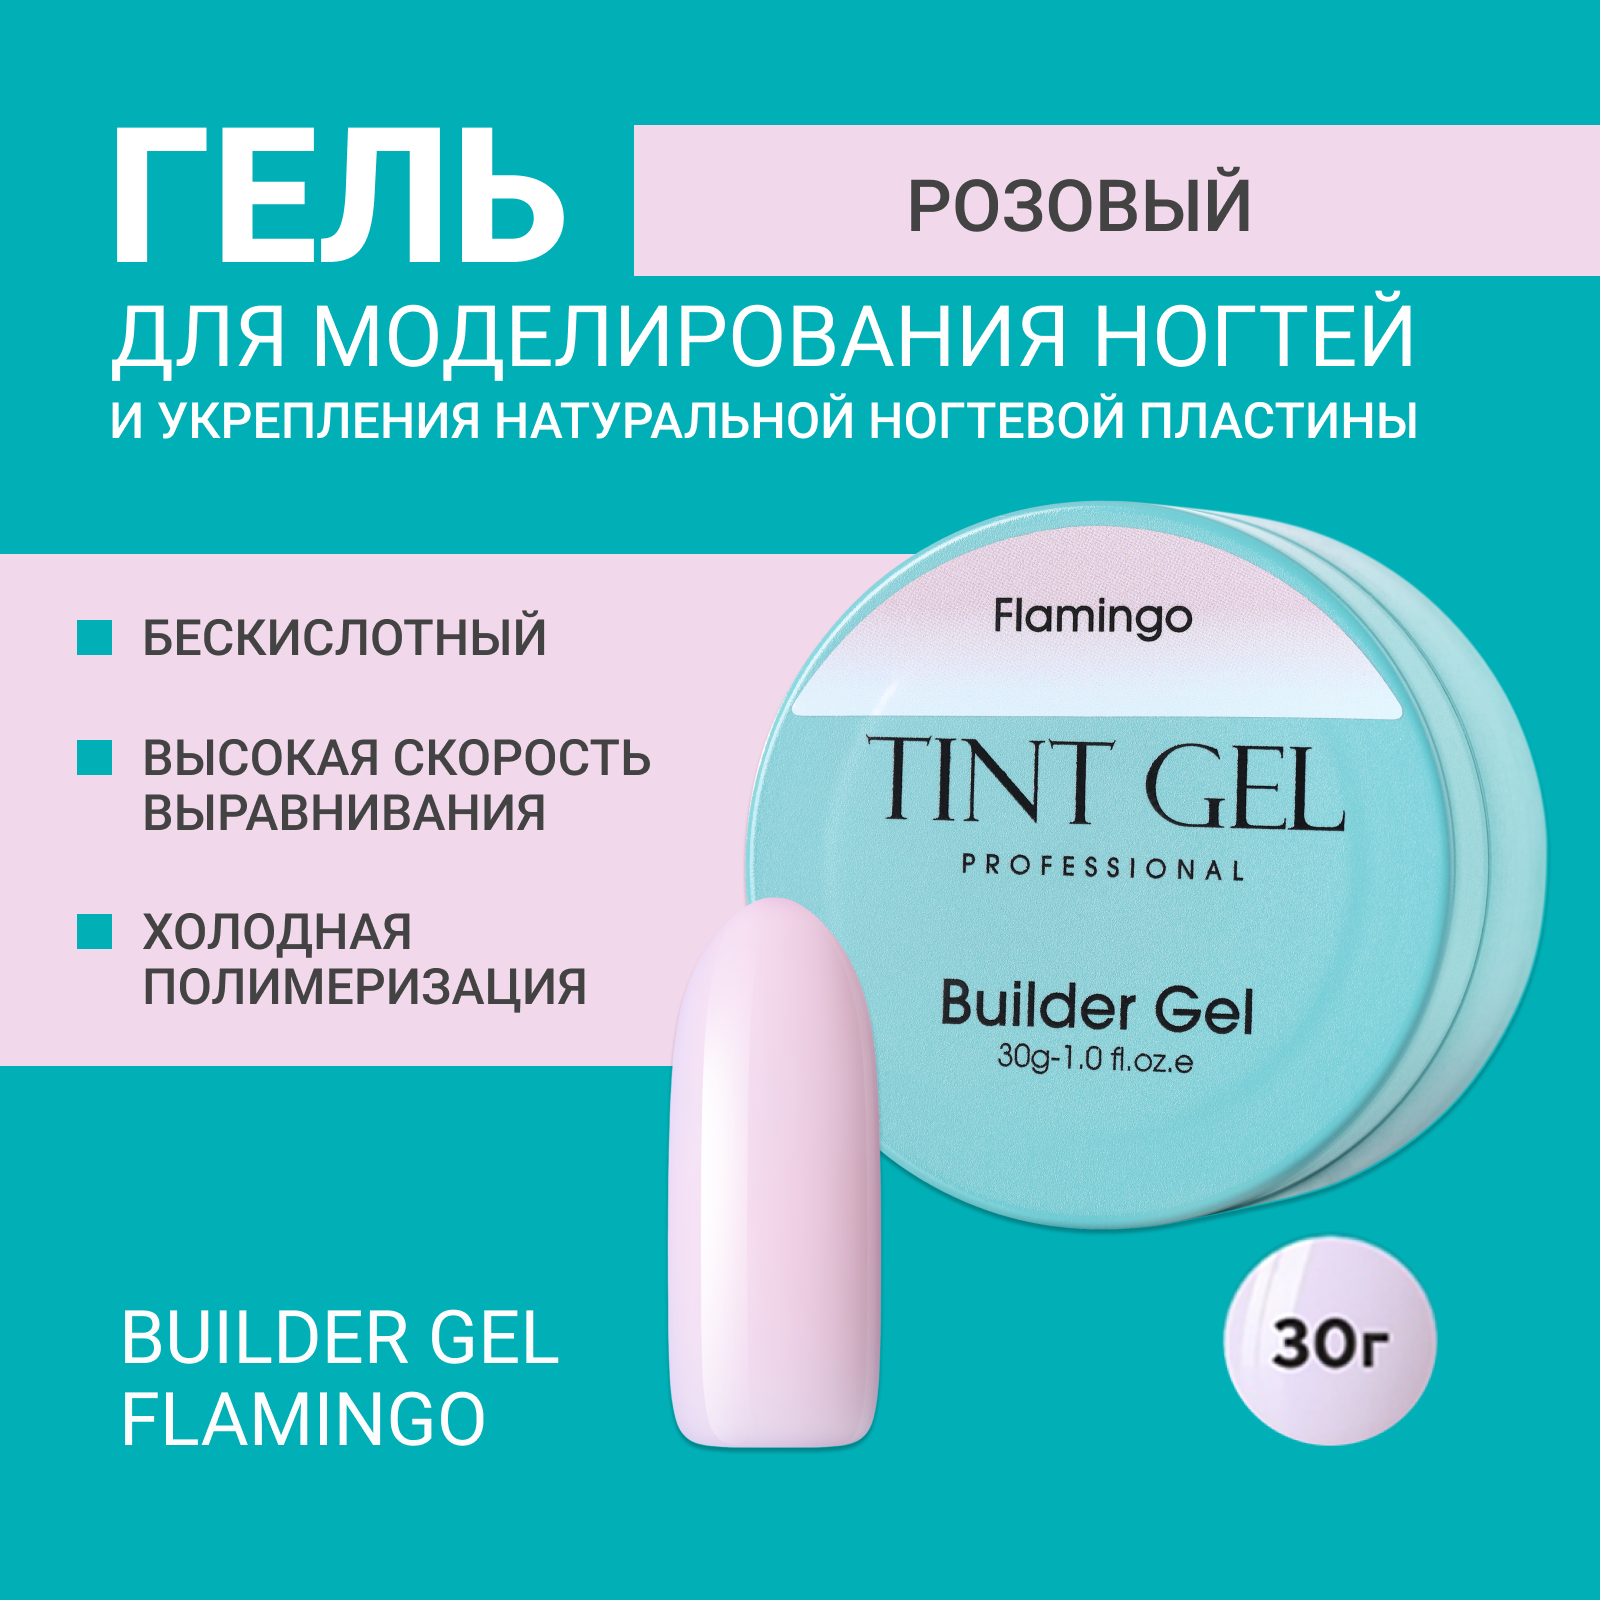 Гель Tint Gel Professional Builder gel Flamingo 30 г flamingo фон для террариума 45х45х10 см